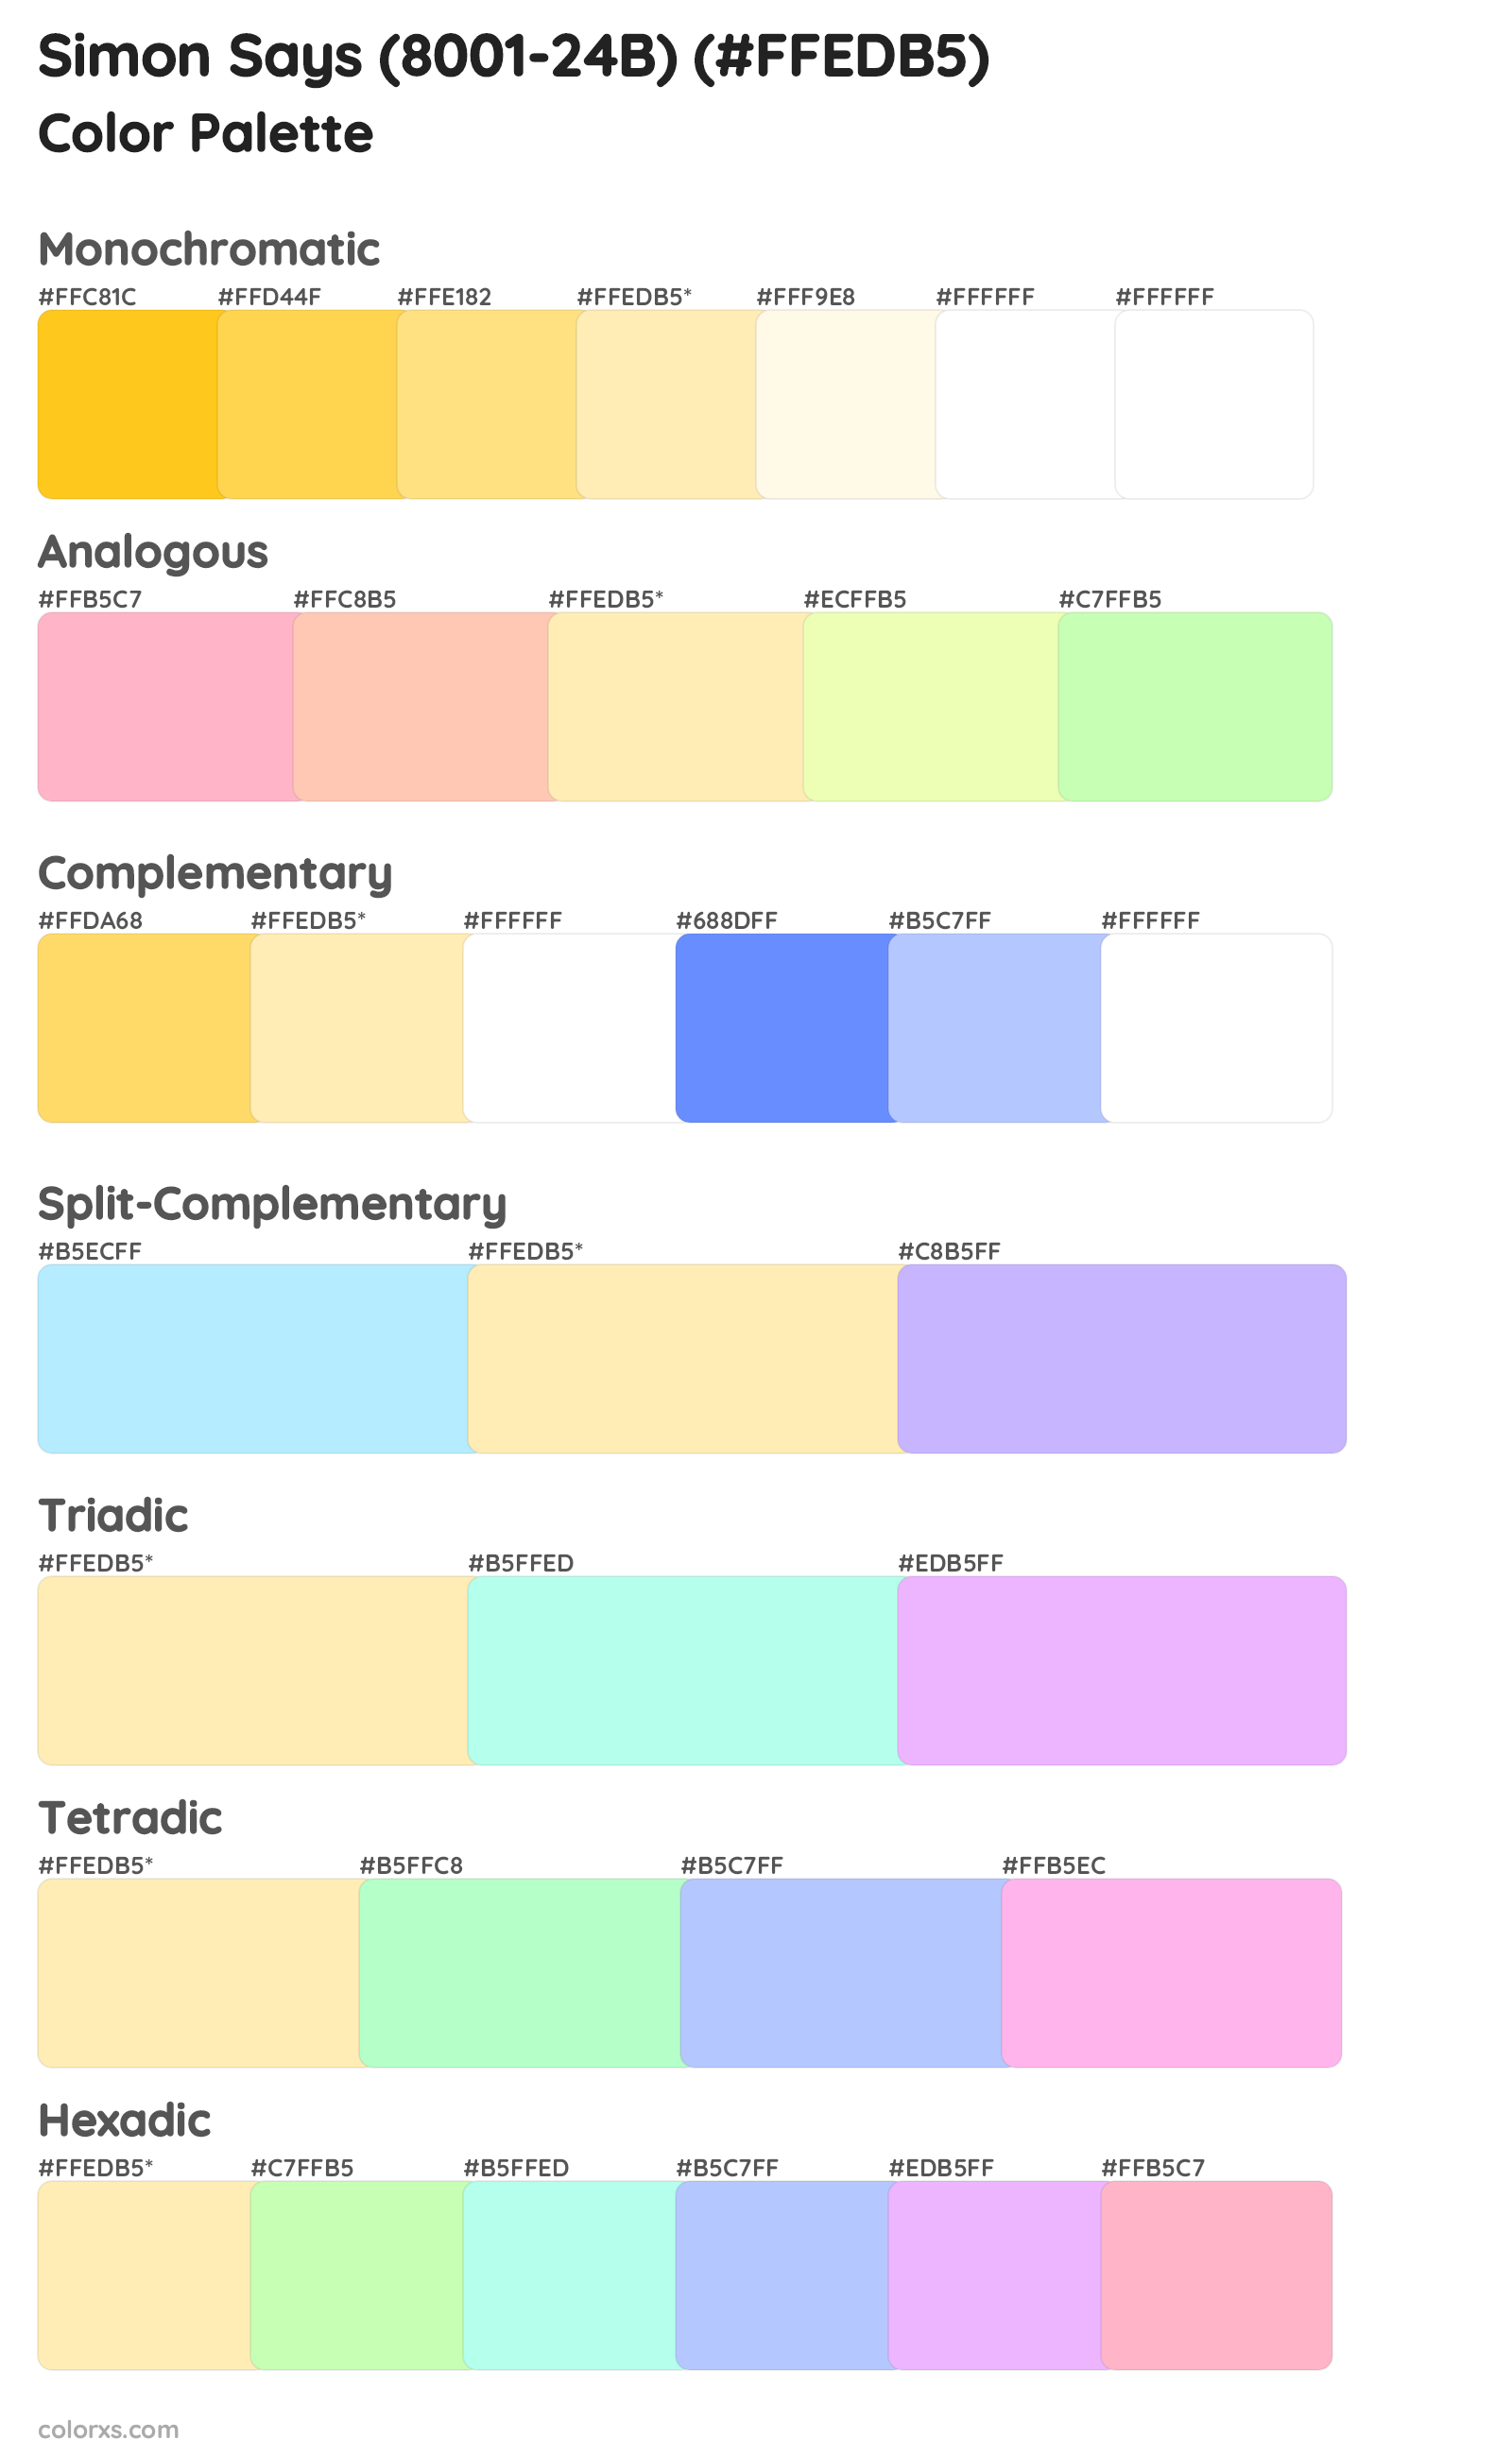 Simon Says (8001-24B) Color Scheme Palettes